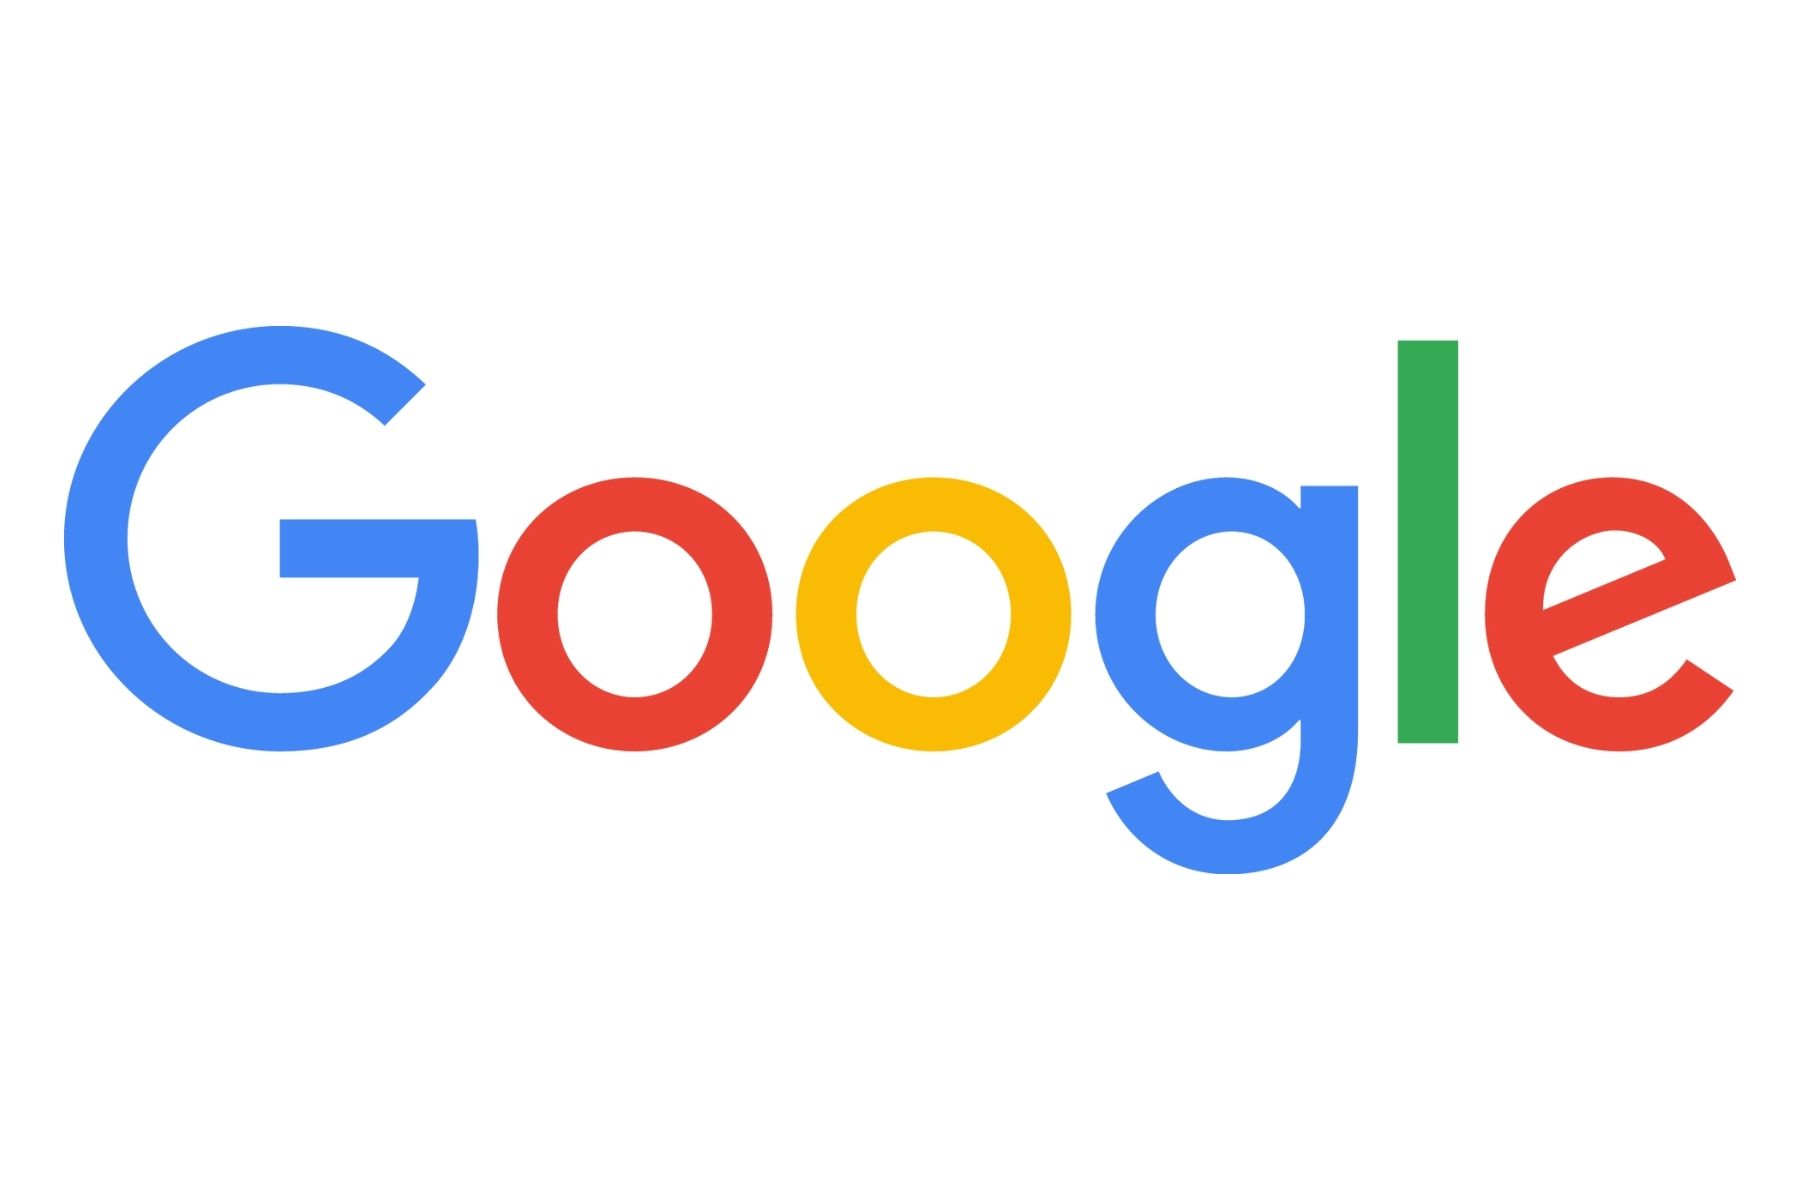 google-logo-full-colour.jpg